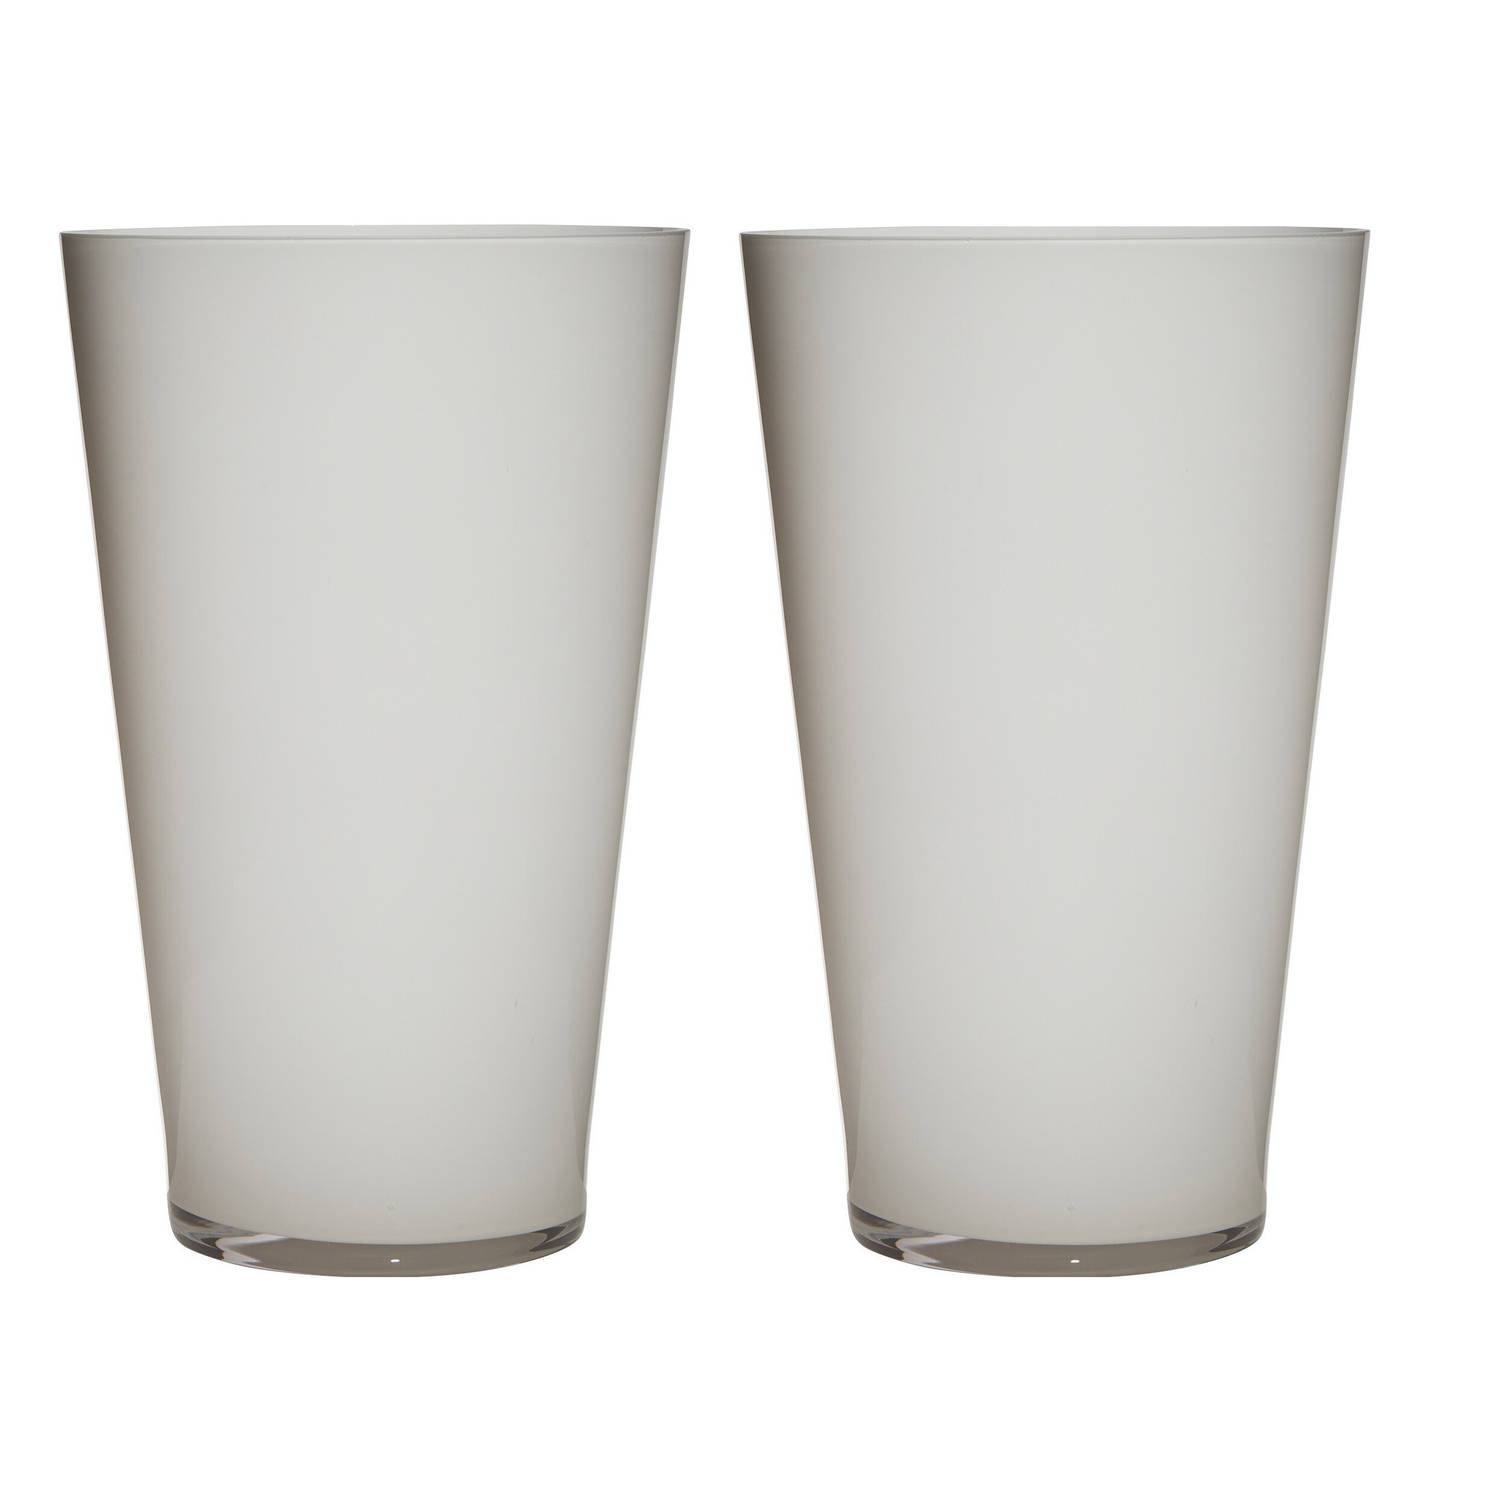 2x Stuks Luxe Witte Conische Stijlvolle Vaas-vazen Van Glas 40 X 25 Cm Bloemen-boeketten Vaas Voor B